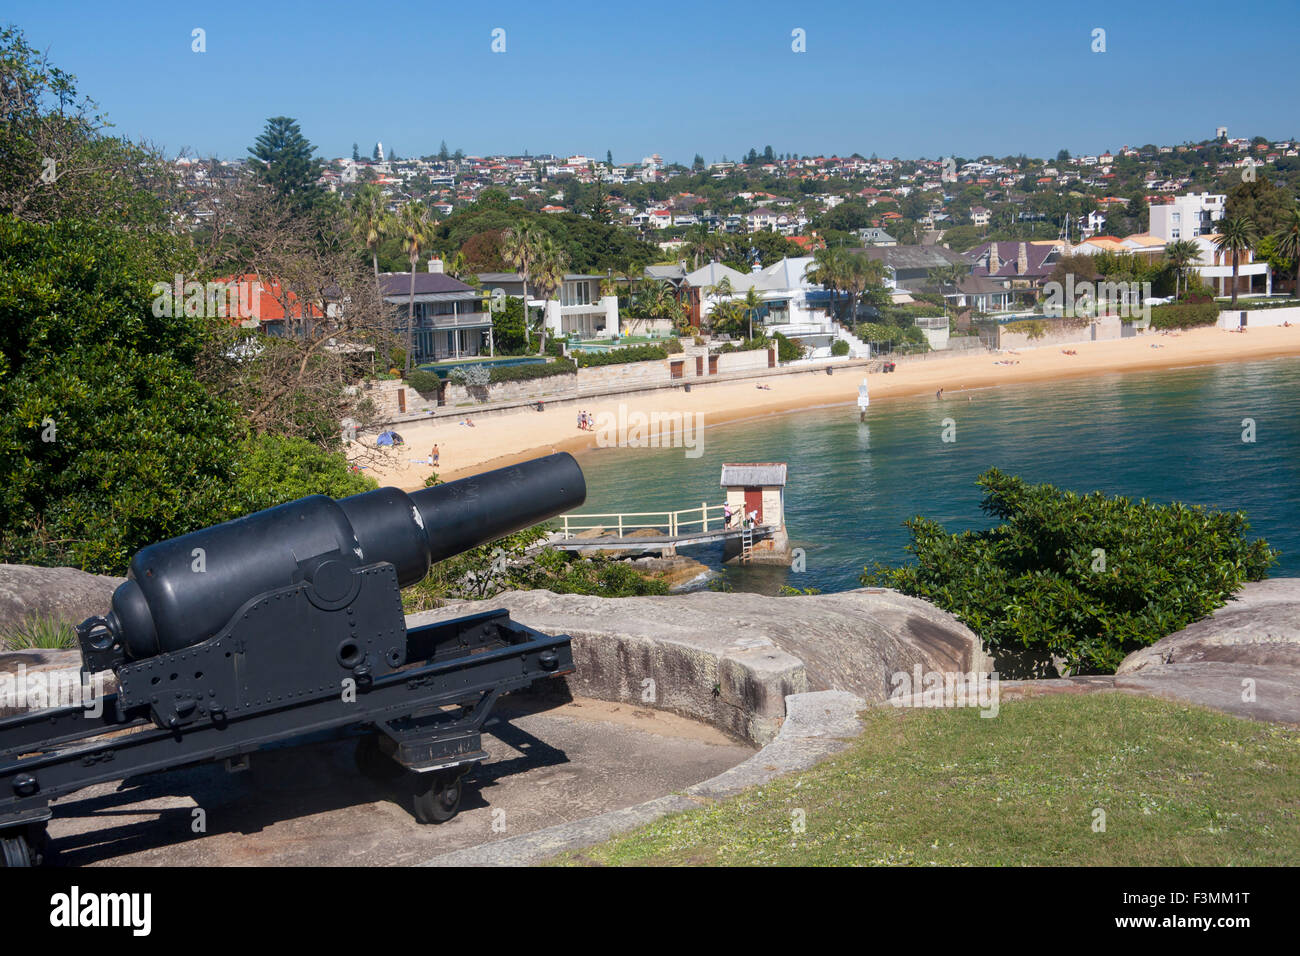 Camp Cove Beach avec des armes à canon en premier plan près de Watsons Bay périphérie est Sydney NSW Australie Nouvelle Galles du Sud Banque D'Images